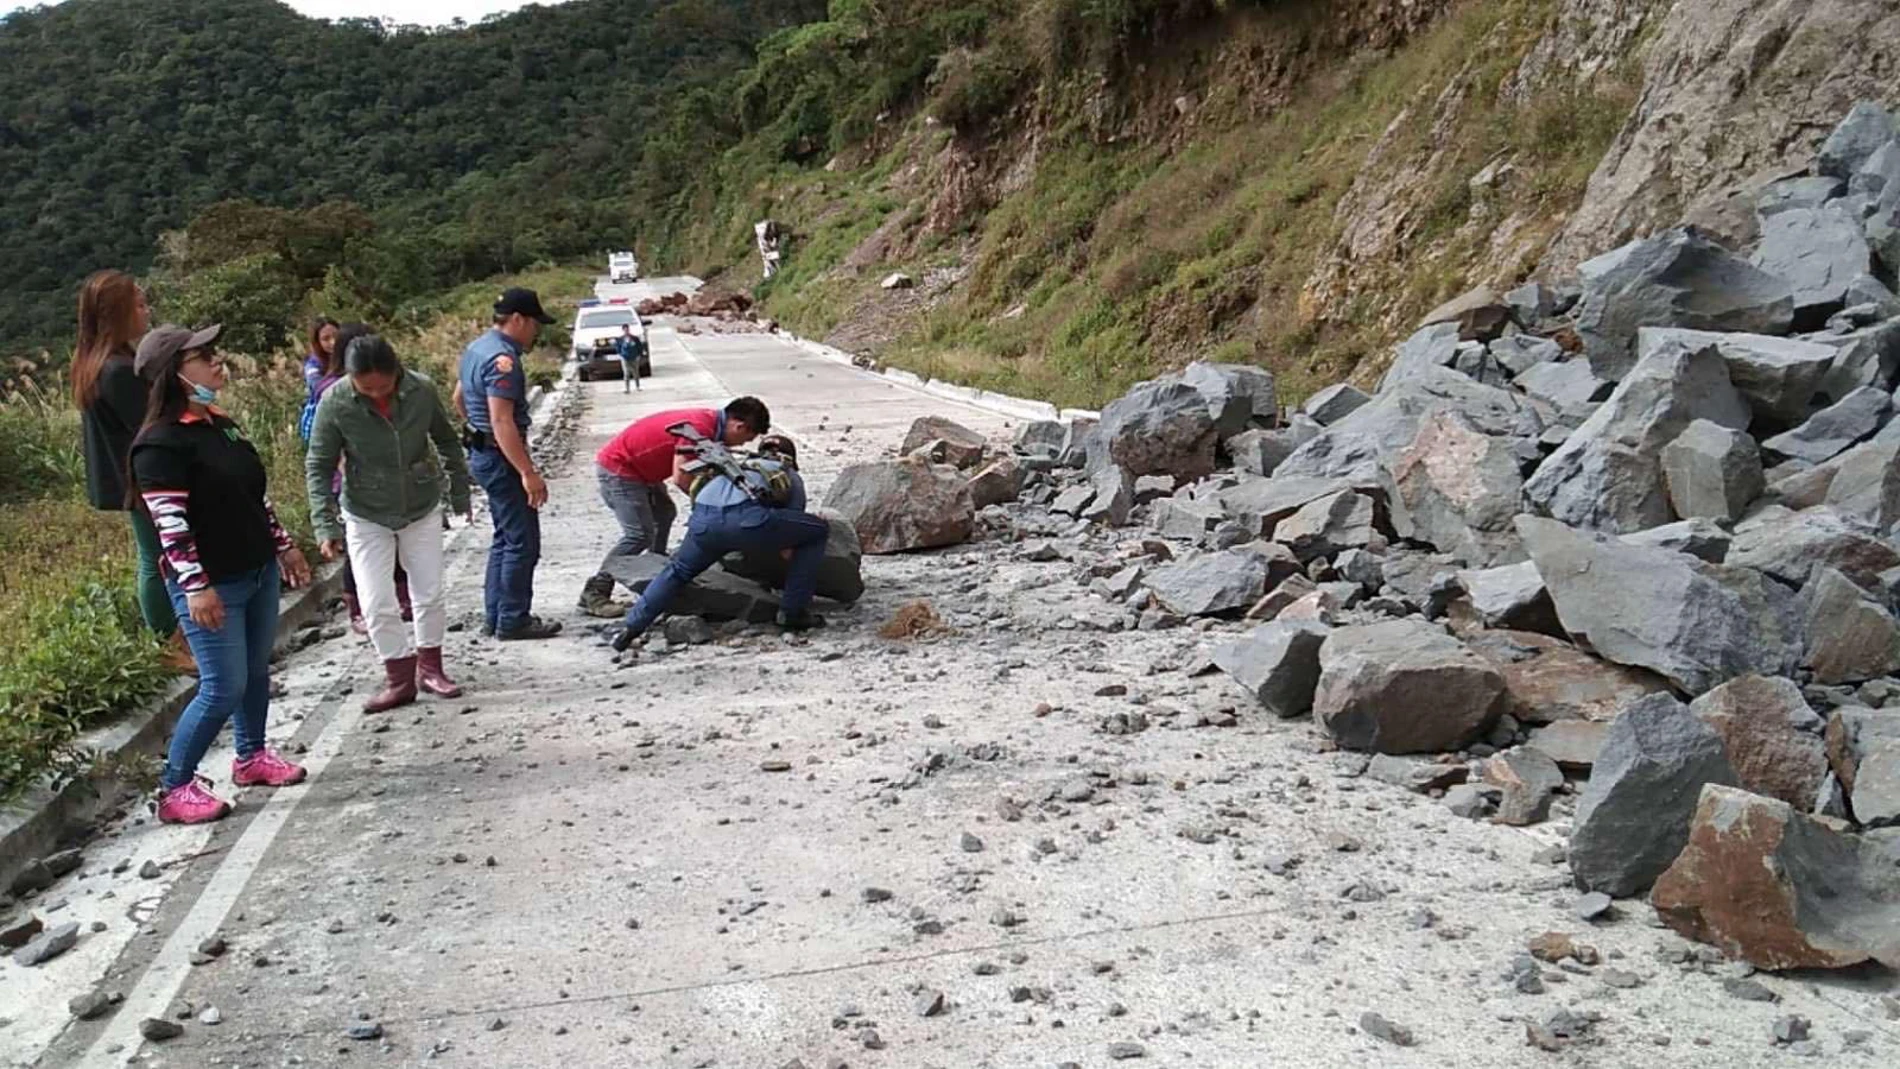 Vecinos de una aldea despejan piedras de una carretera tras un terremoto en Tinok hi-way, región de la Cordillera, en Filipinas